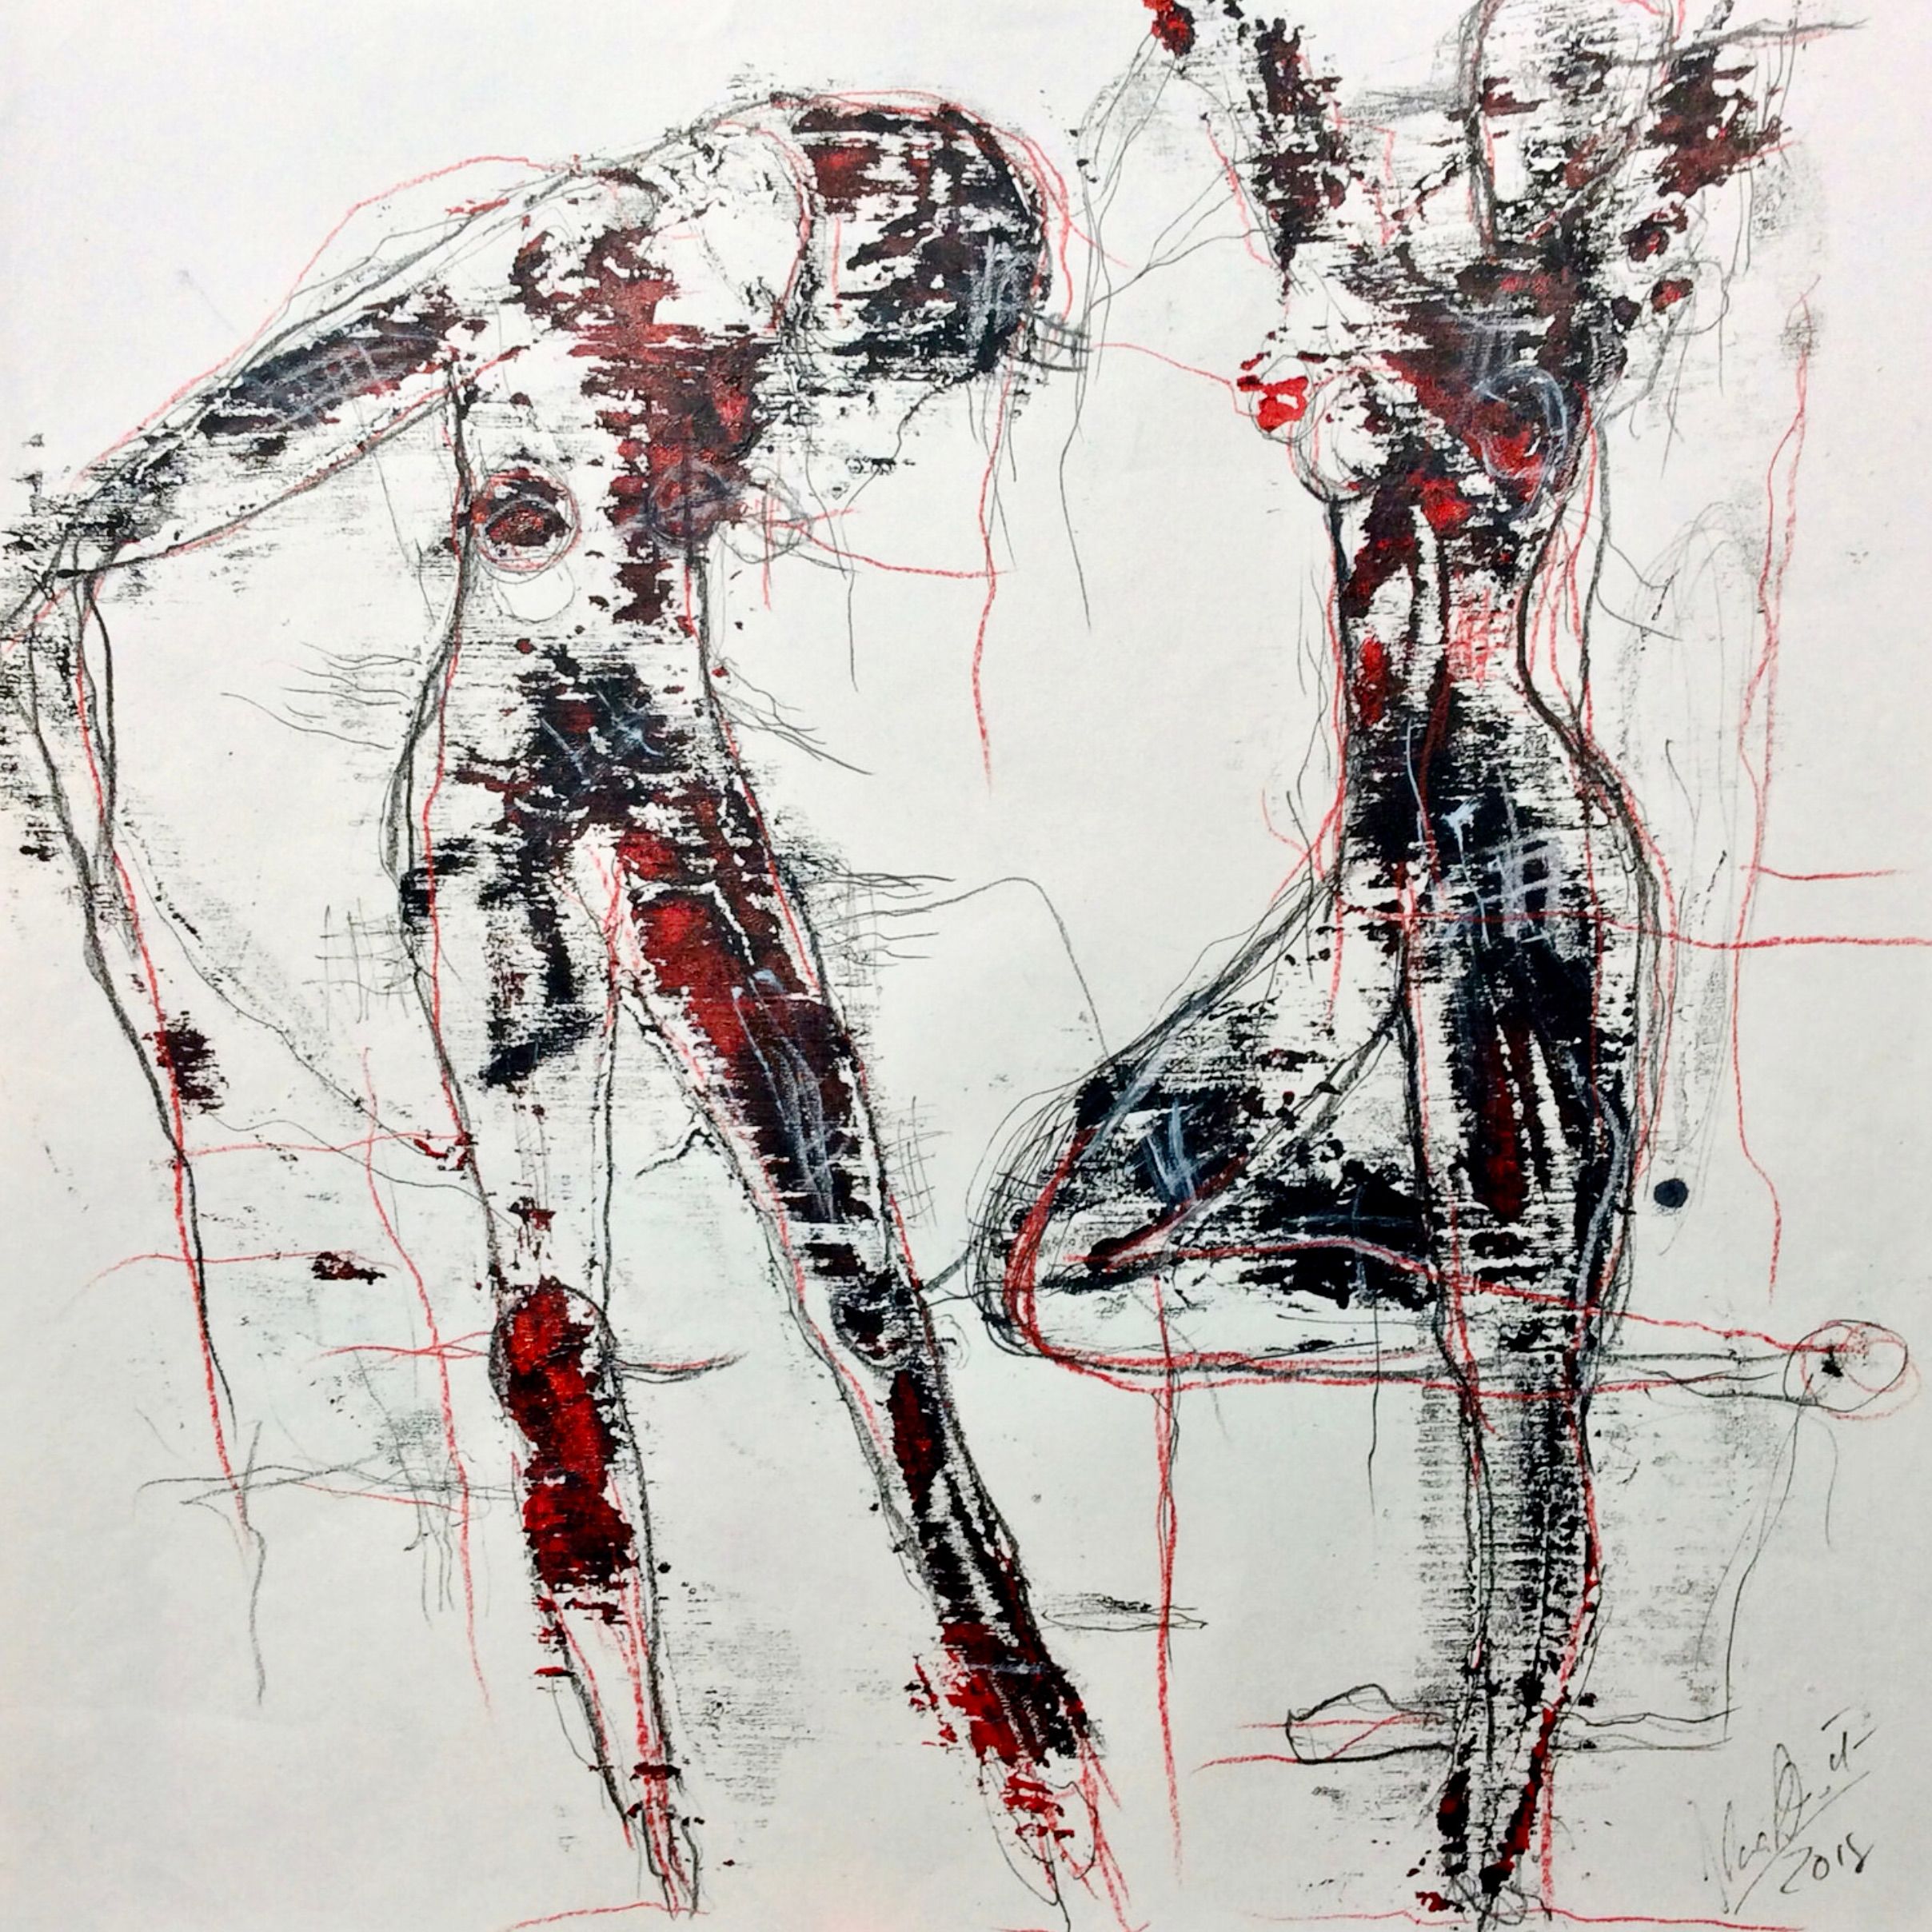 El "Monoprint No. 20" de Ilona Schmidt, pintura/dibujo expresivo semiabstracto, muestra dos cuerpos femeninos desnudos. Los colores blanco y negro, con salpicaduras de rojo, dominan esta pintura.